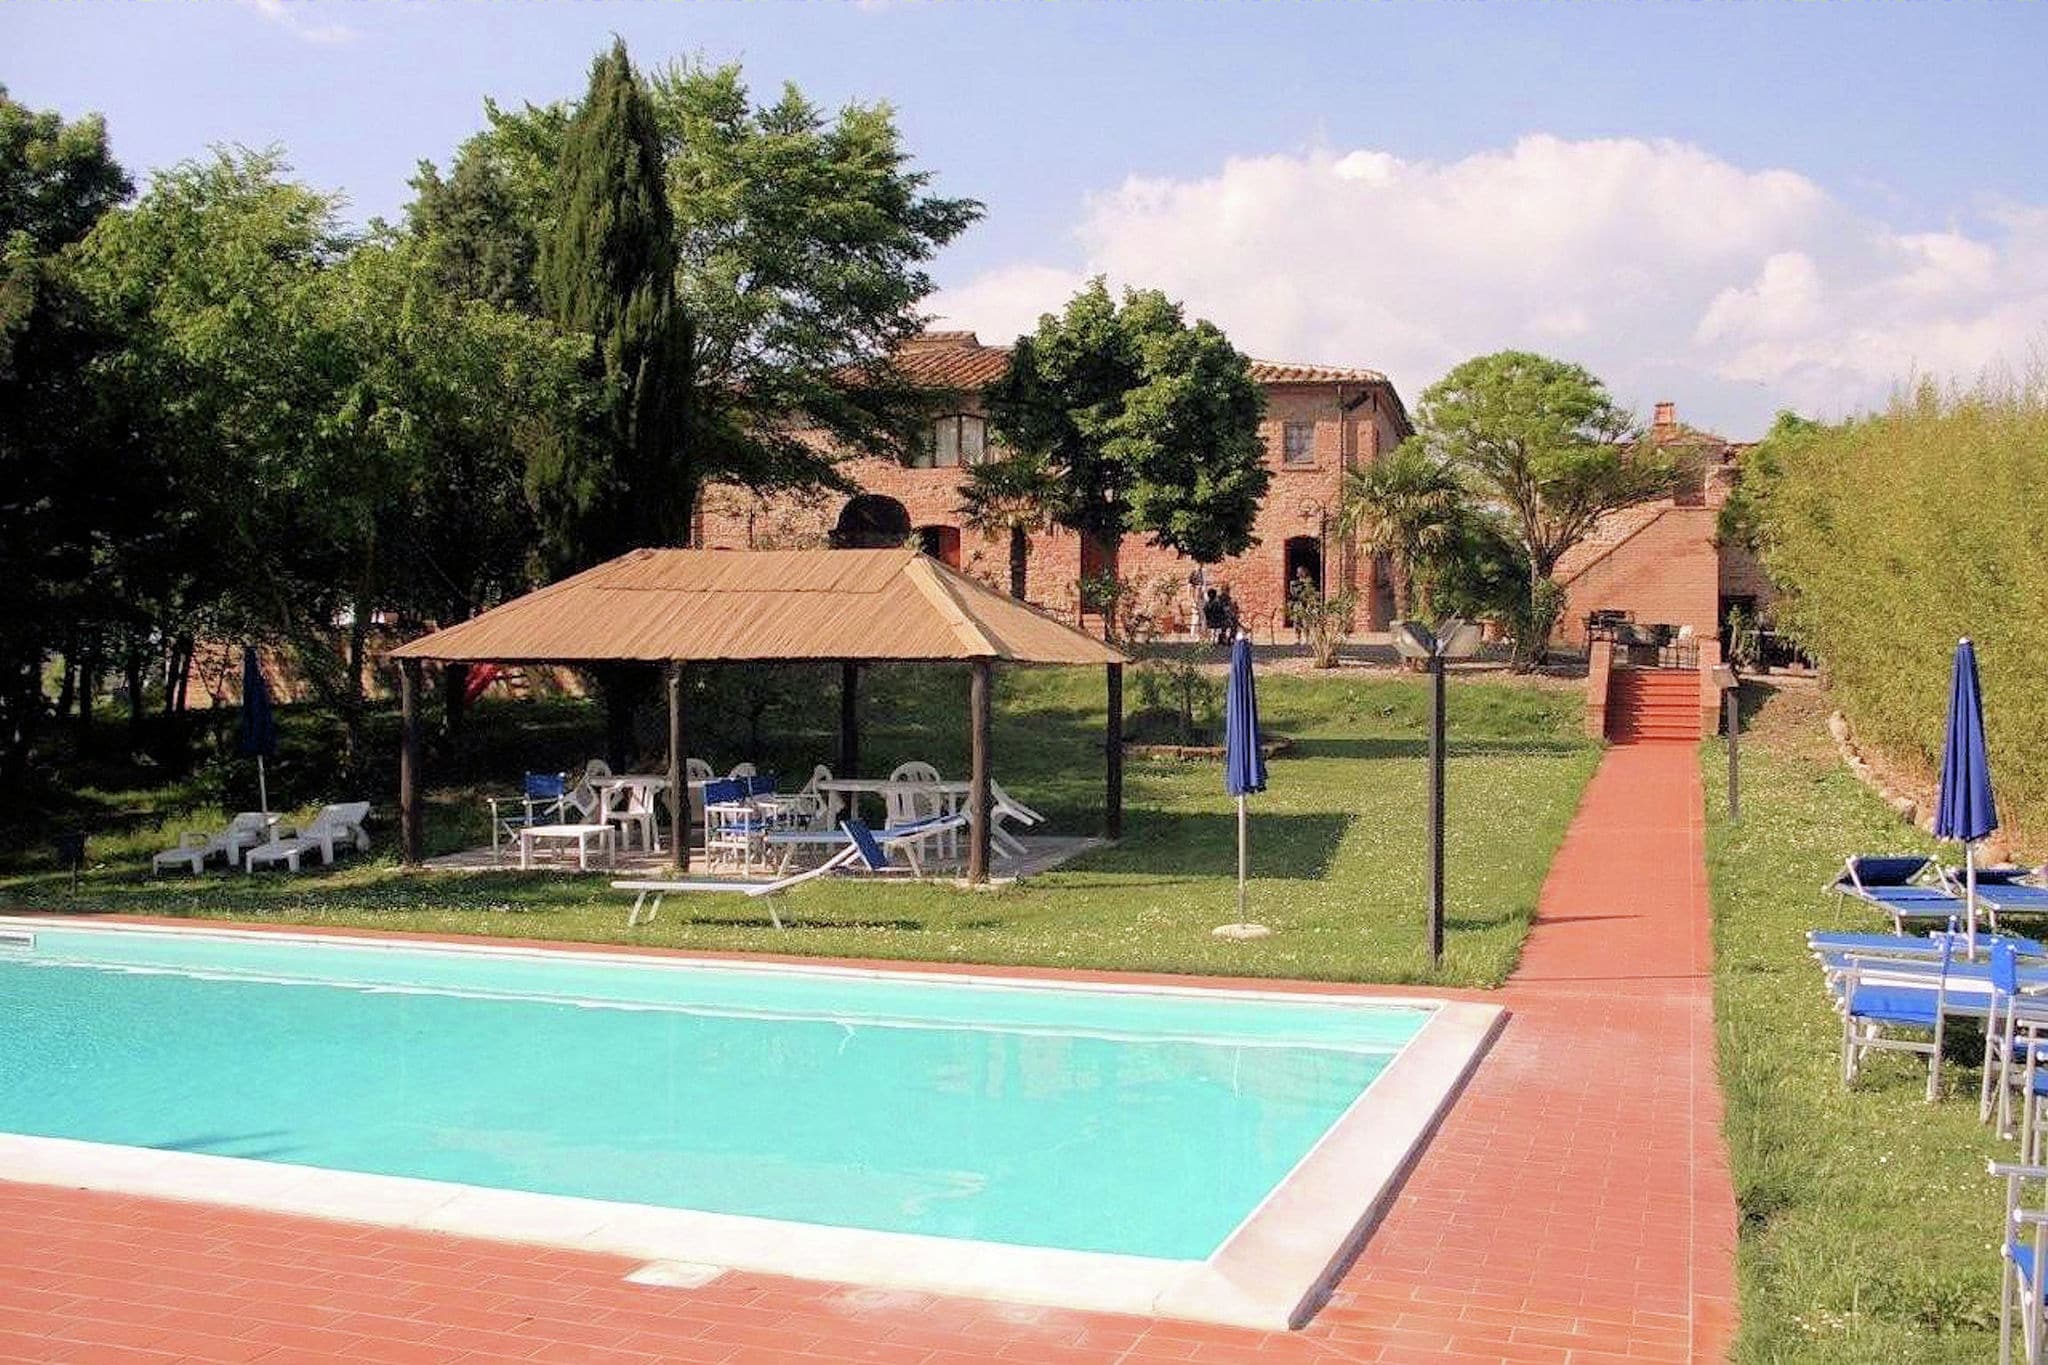 Appartement in een boerderij, met zwembad, in het hart van Toscane